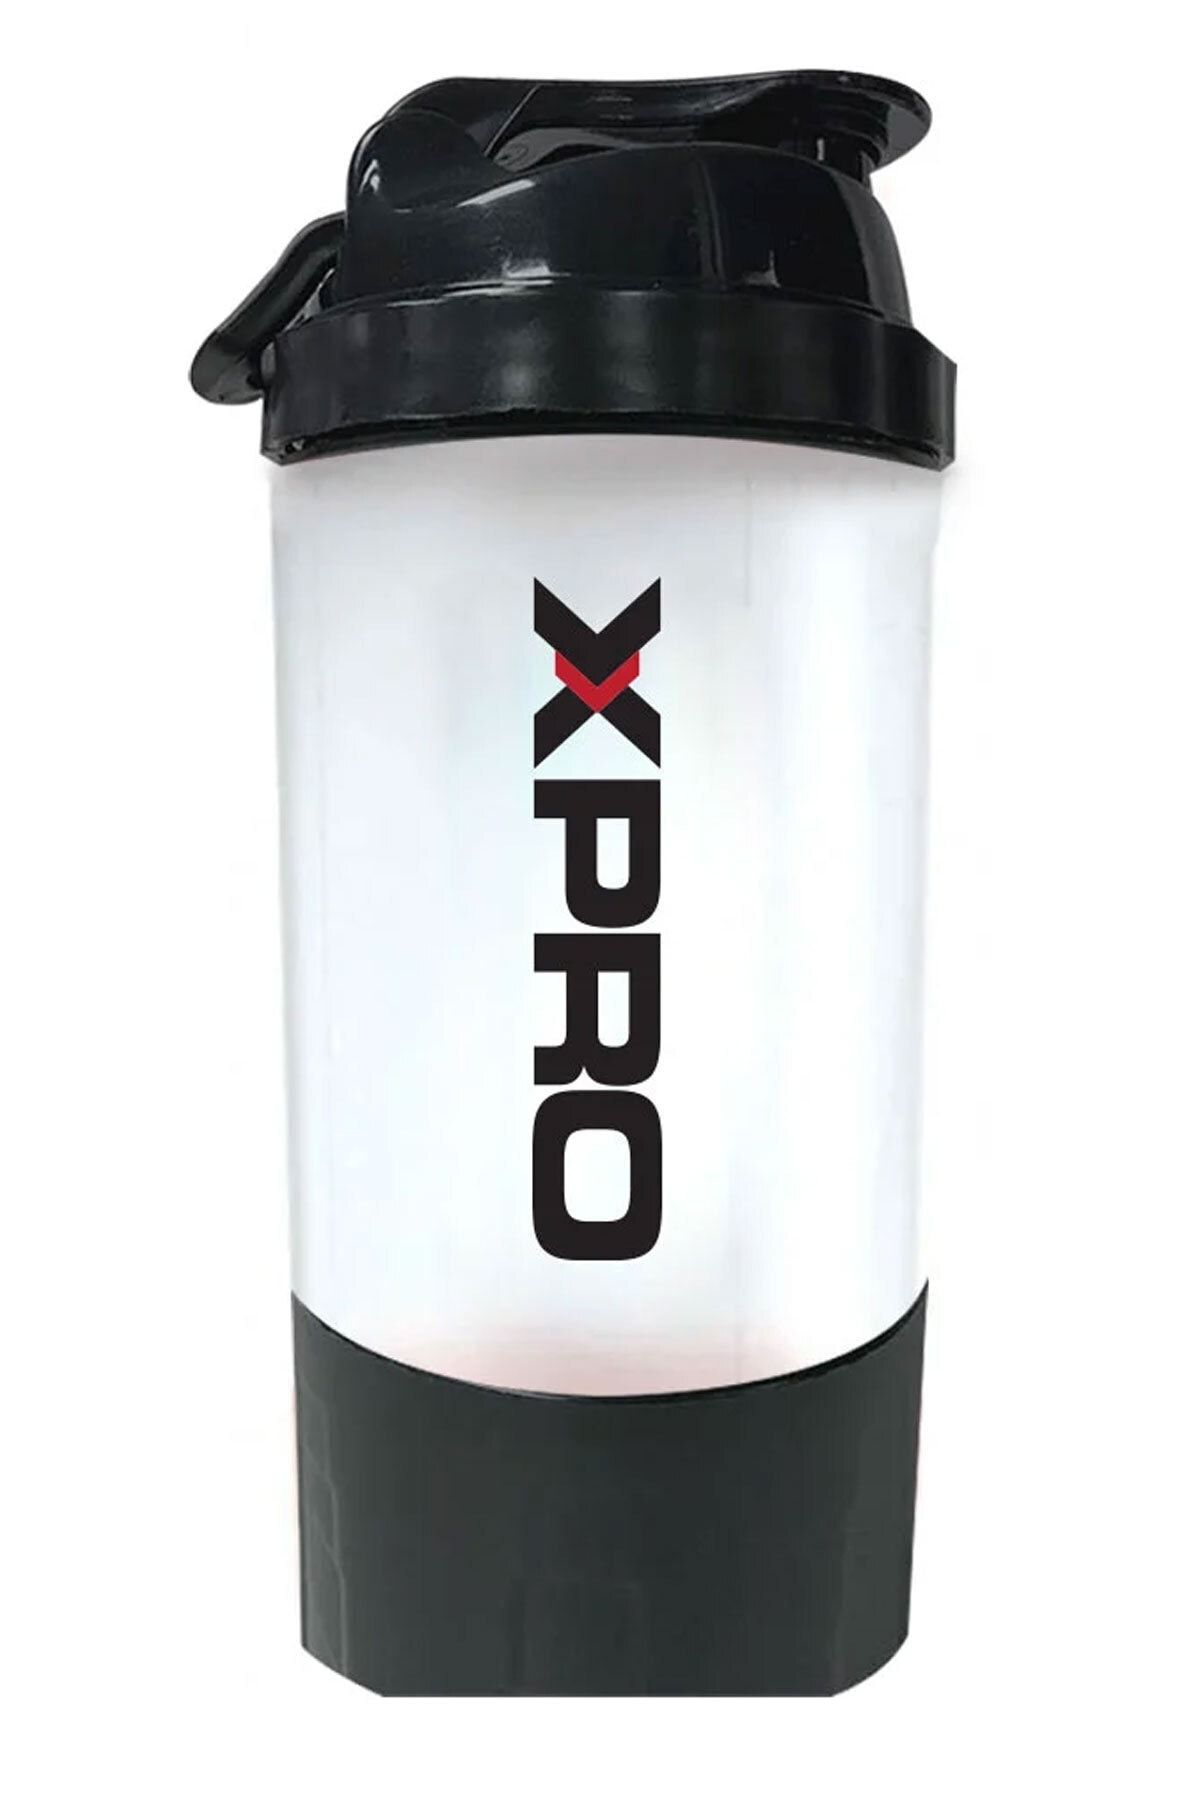 Xpro Nutrition Toz Saklama Hazneli Shaker 500ml Siyah